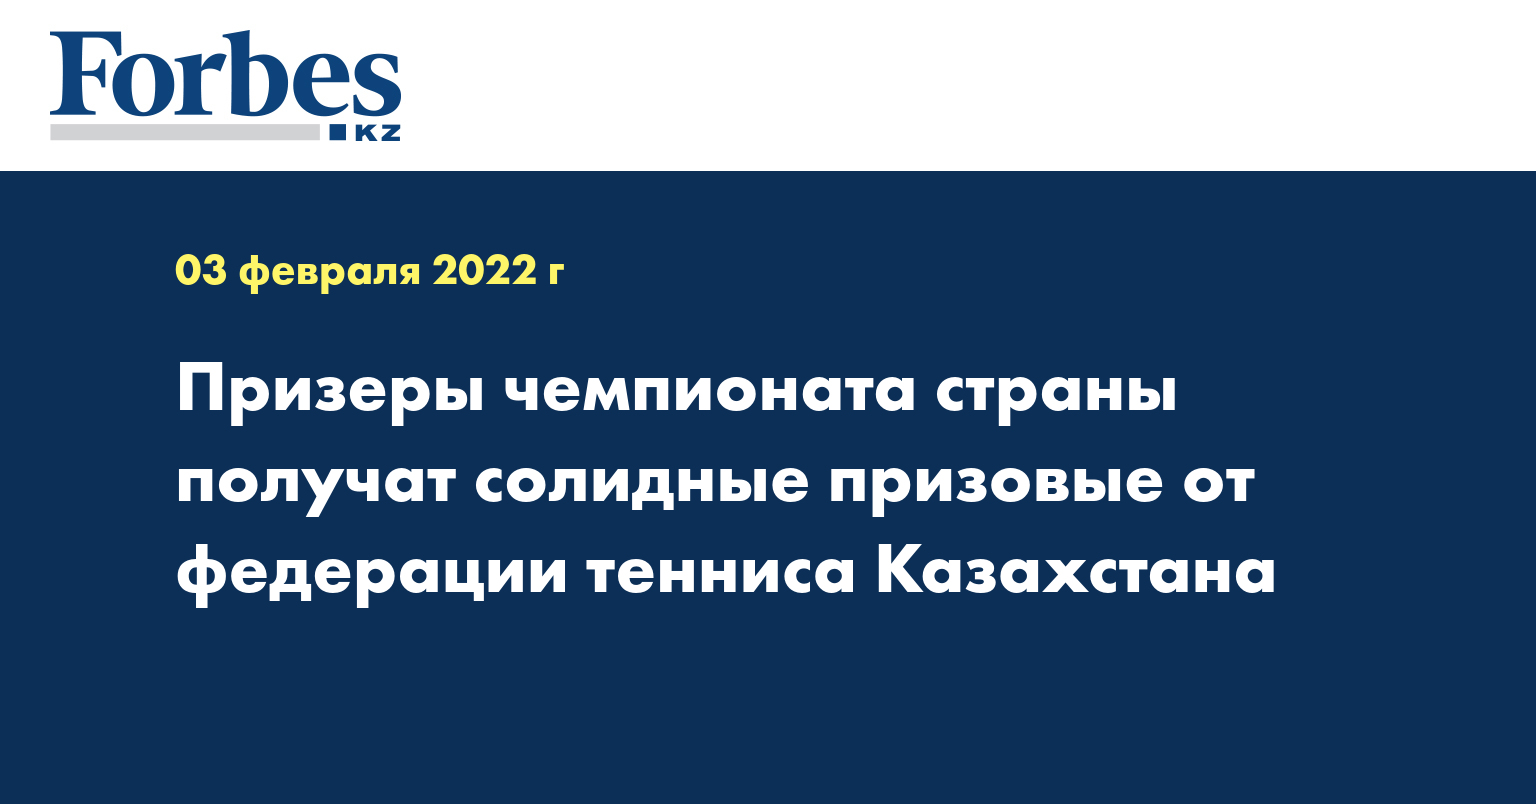 Призеры чемпионата страны получат солидные призовые от федерации тенниса Казахстана